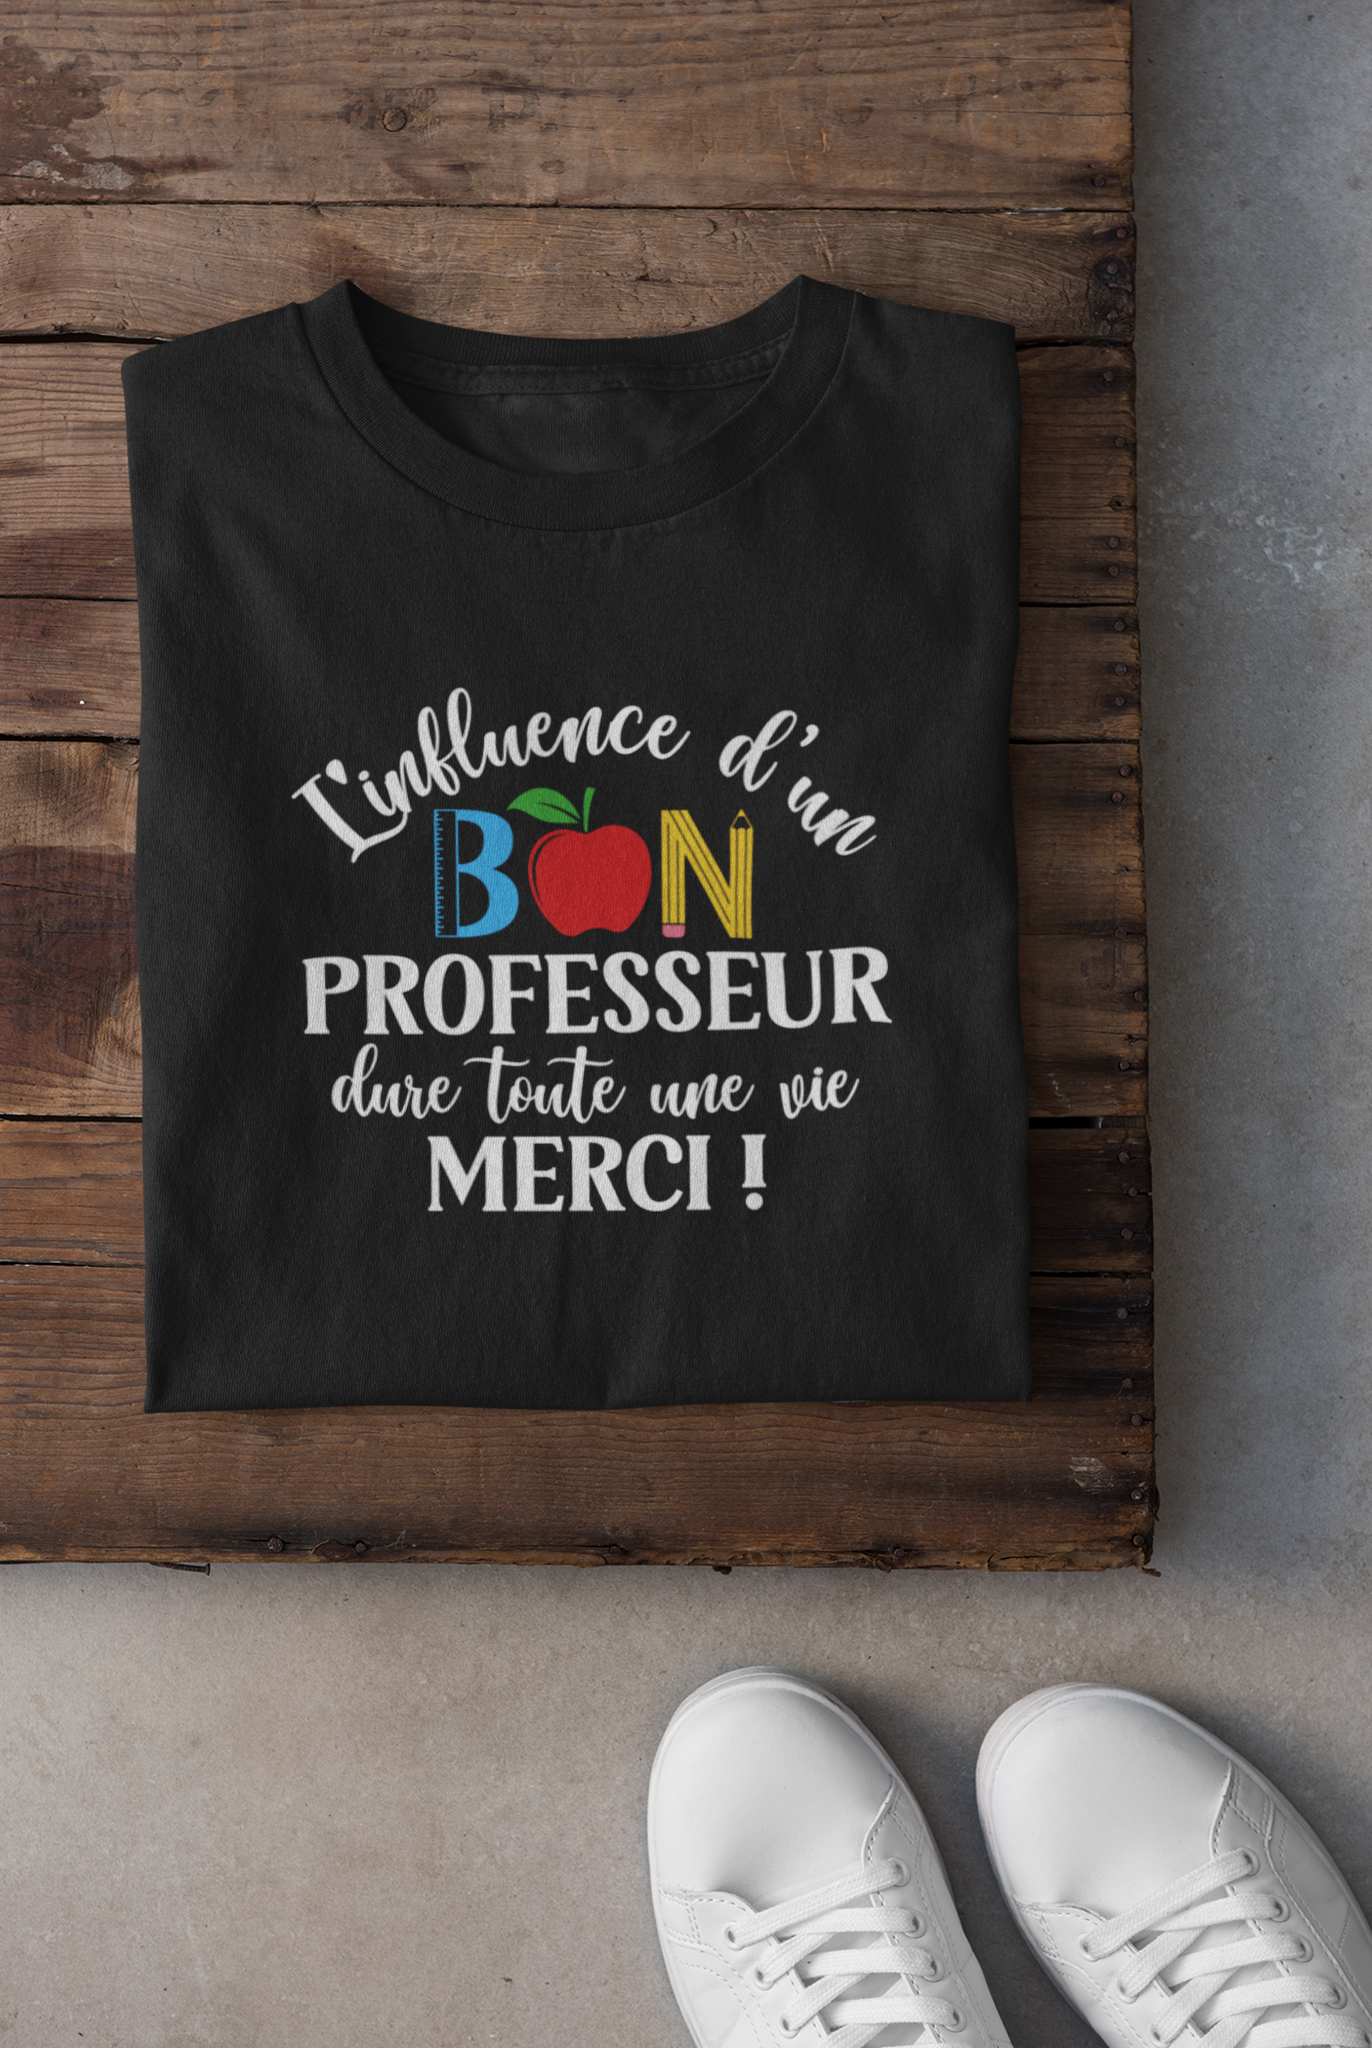 T-shirt - L'influence d'un bon professeur dure toute une vie